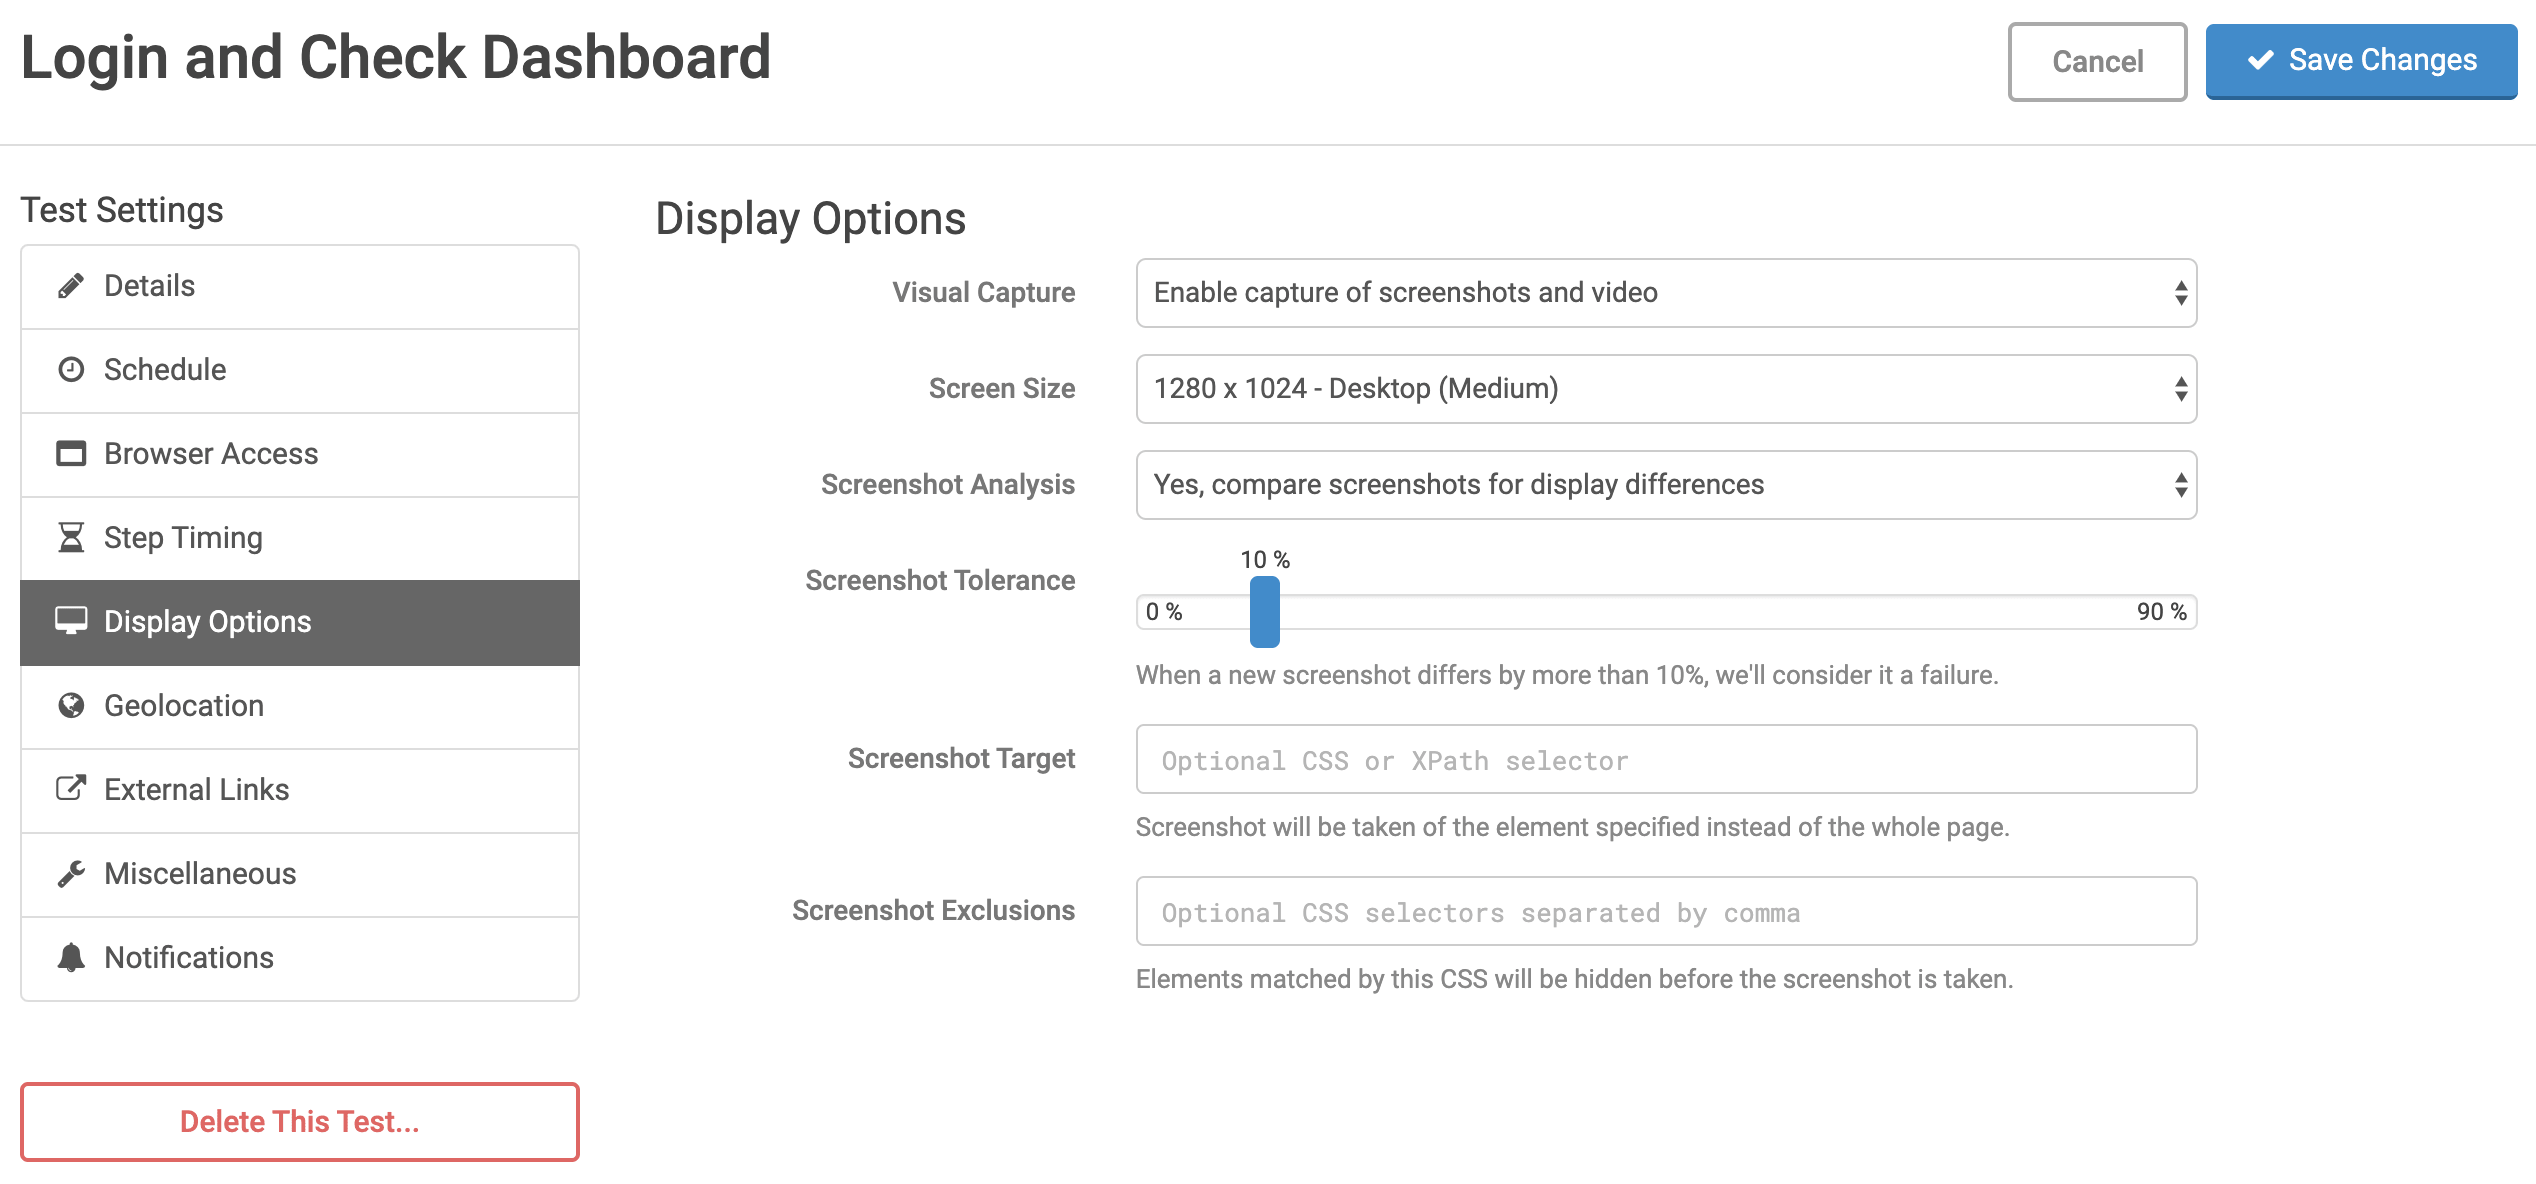 Display Options